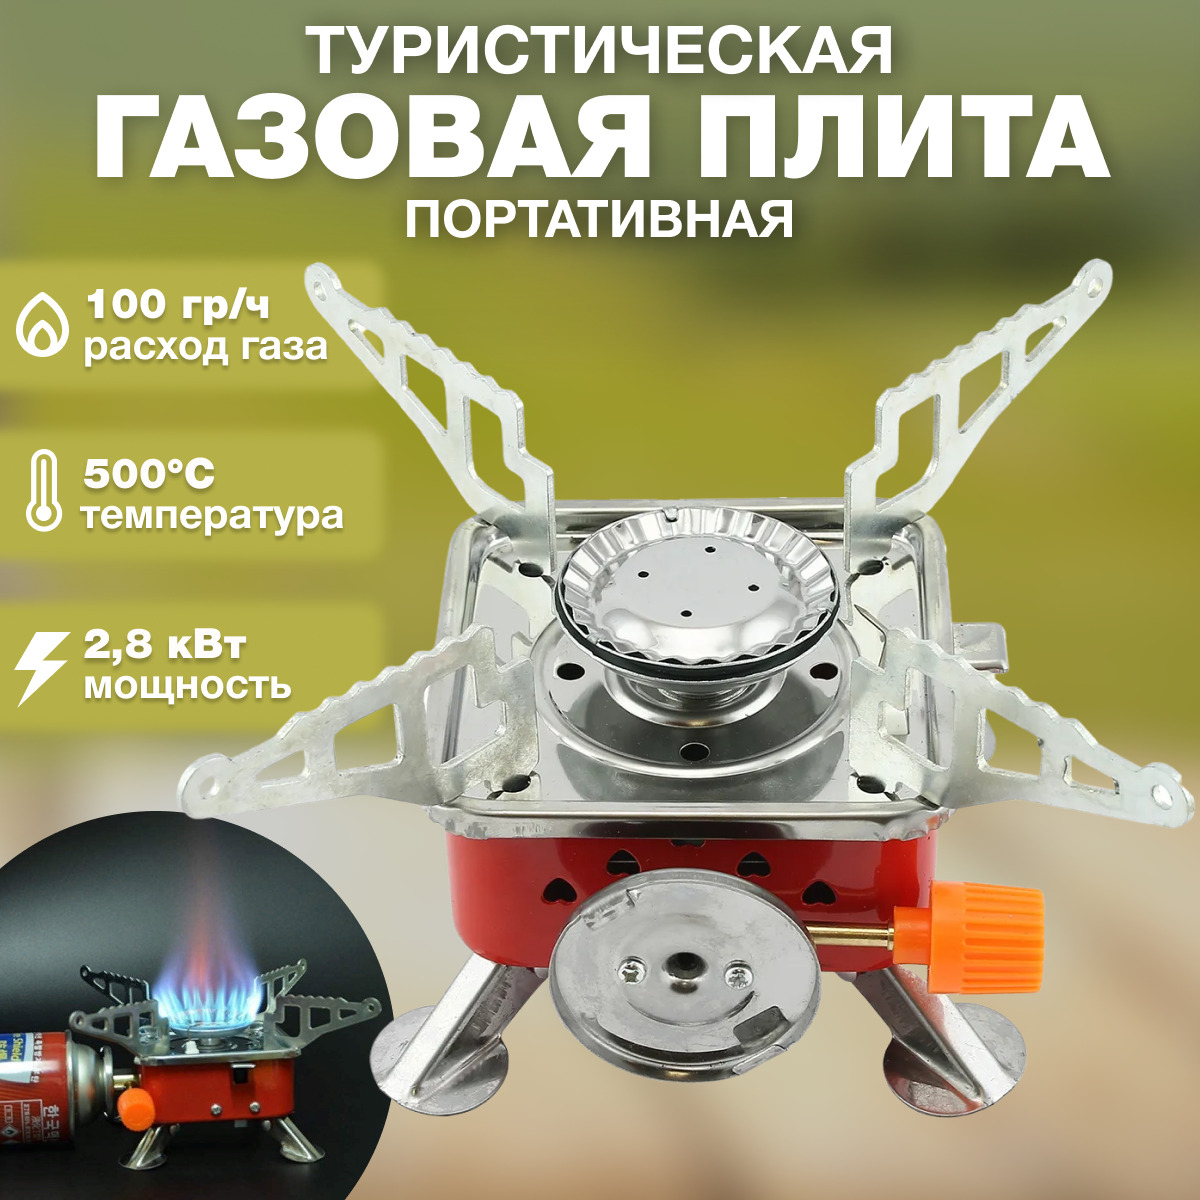 Туристическая газовая плита AT с пъезоподжигом AT35985 - купить в Москве, цены на Мегамаркет | 600006897326